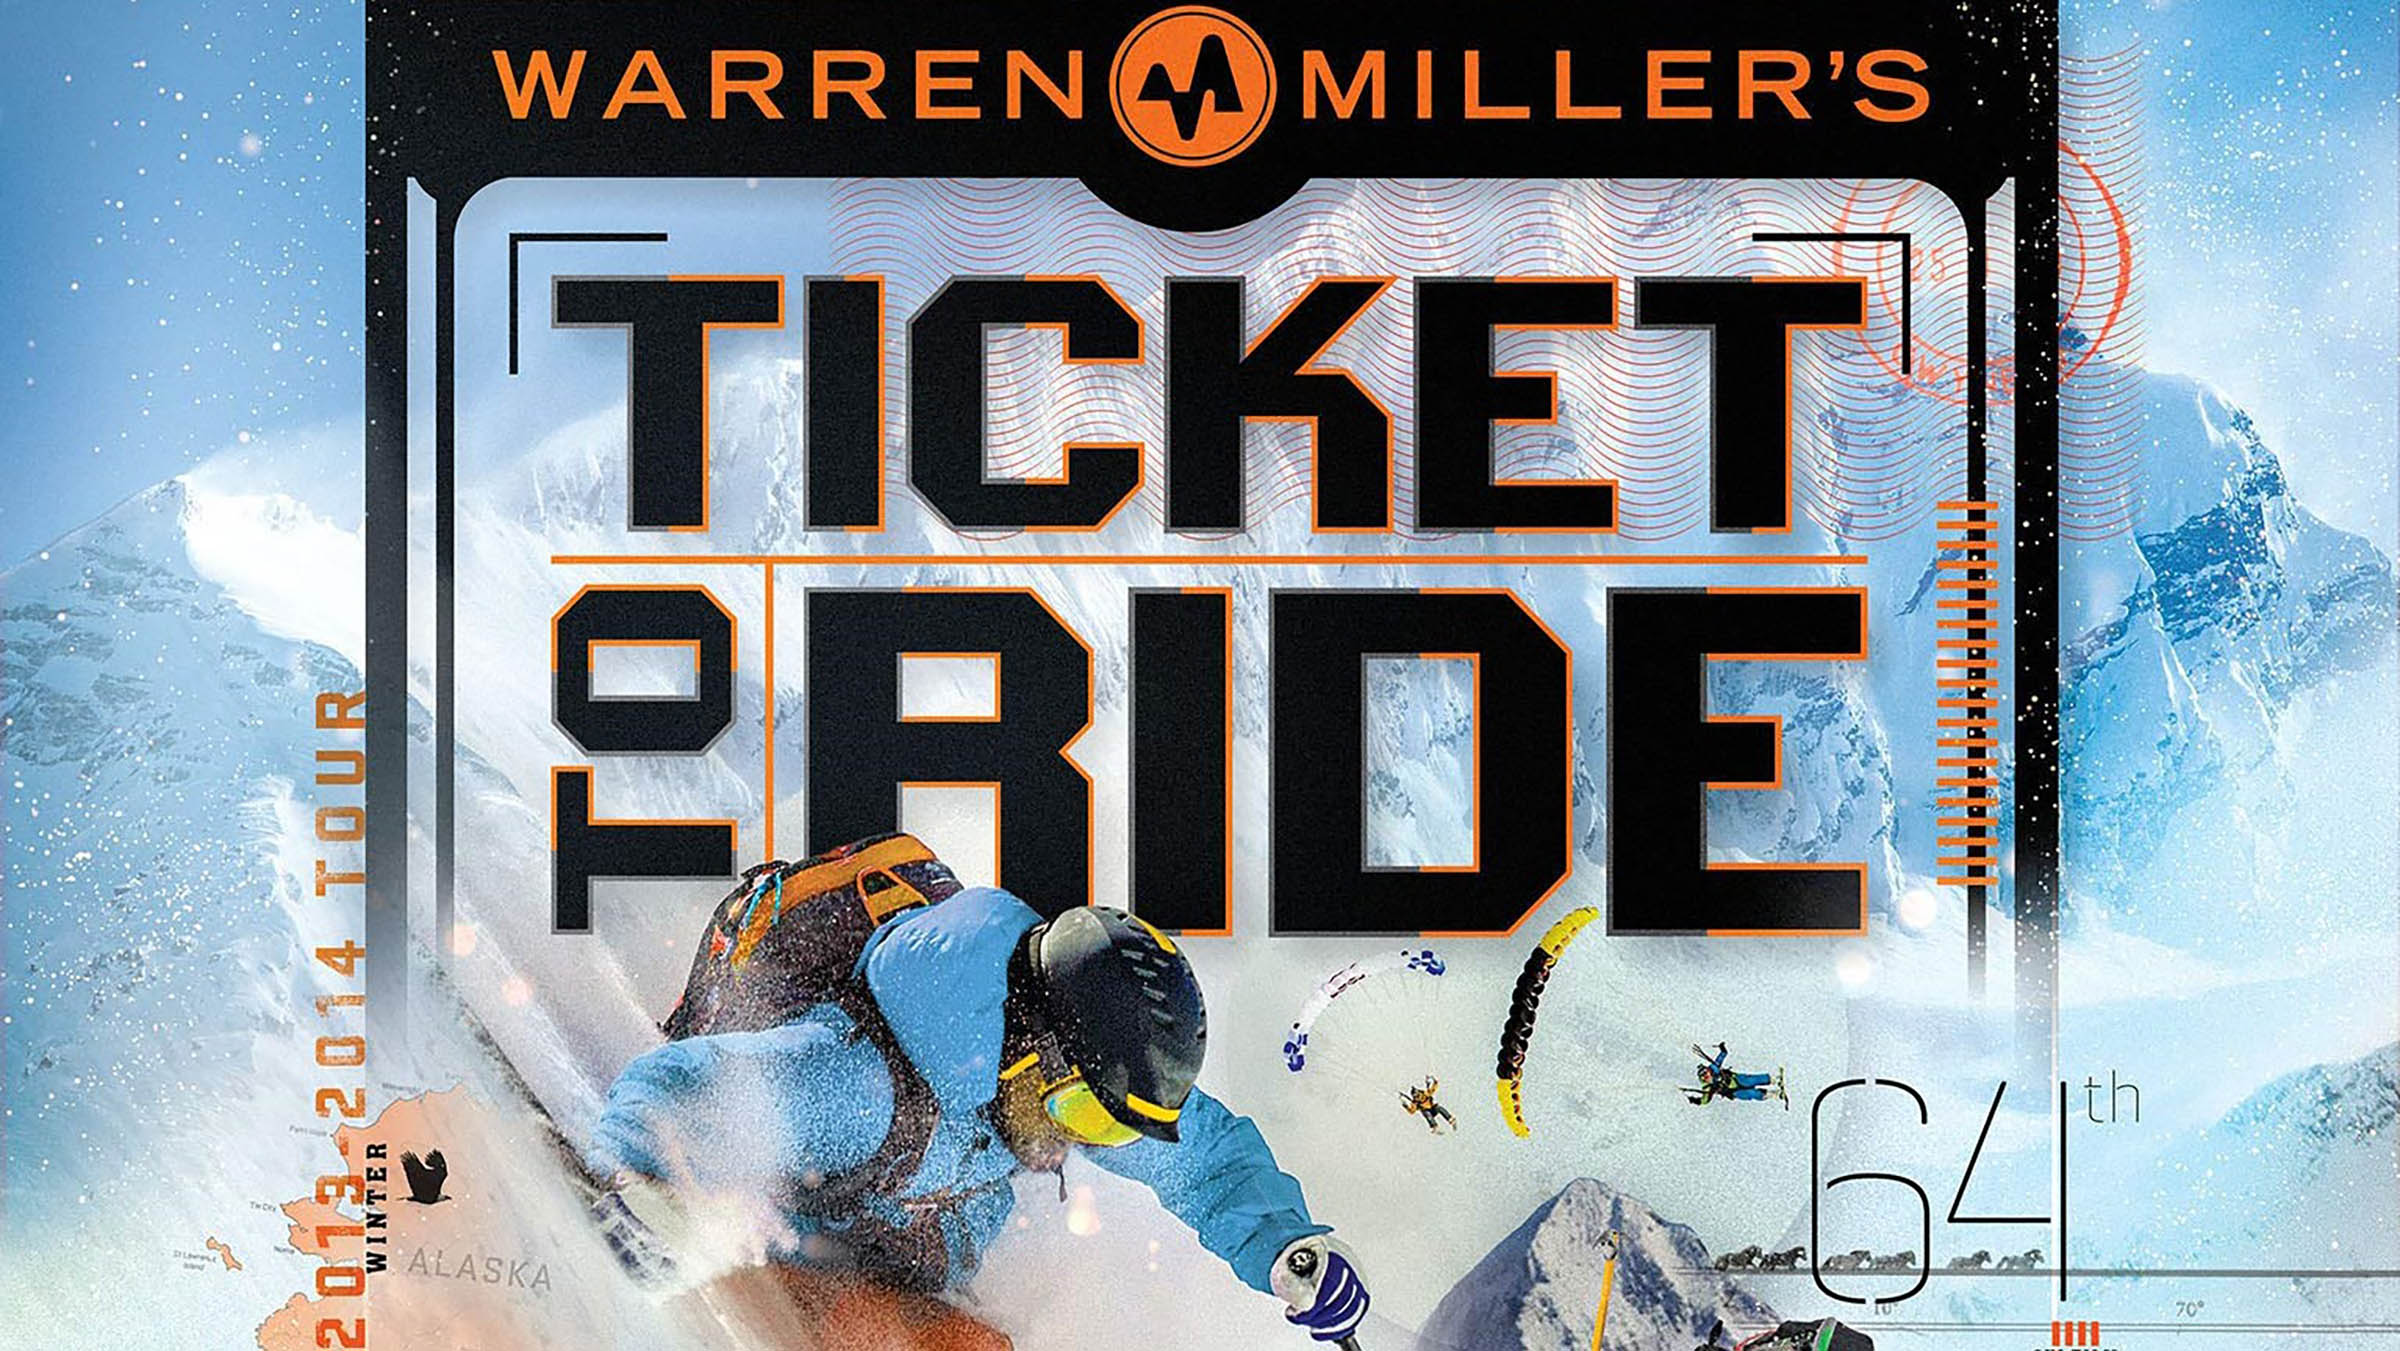 Warren Miller's Ticket to Ride Poster